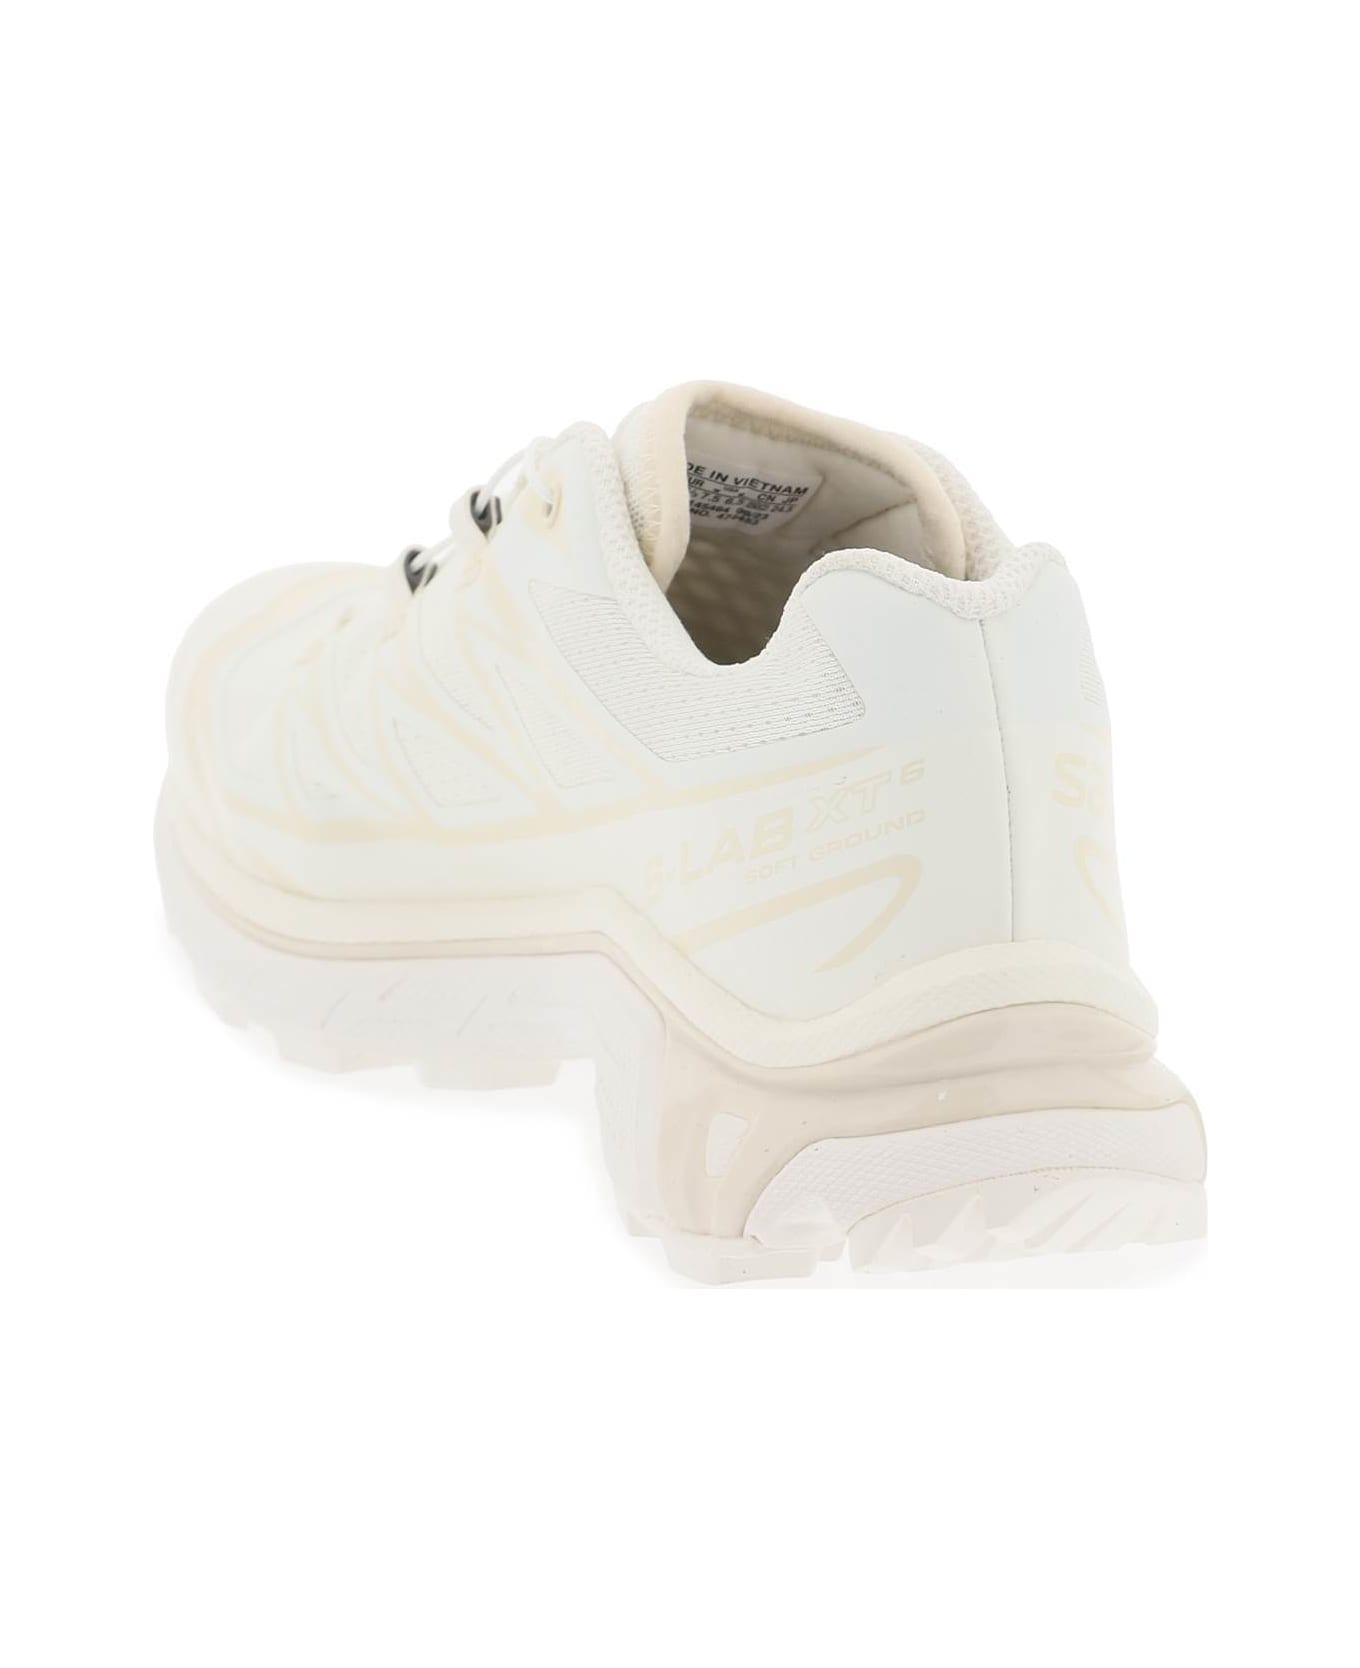 Salomon Xt-6 Sneakers - VANILLA ICE VANILLA ICE ALMOND MILK (White)